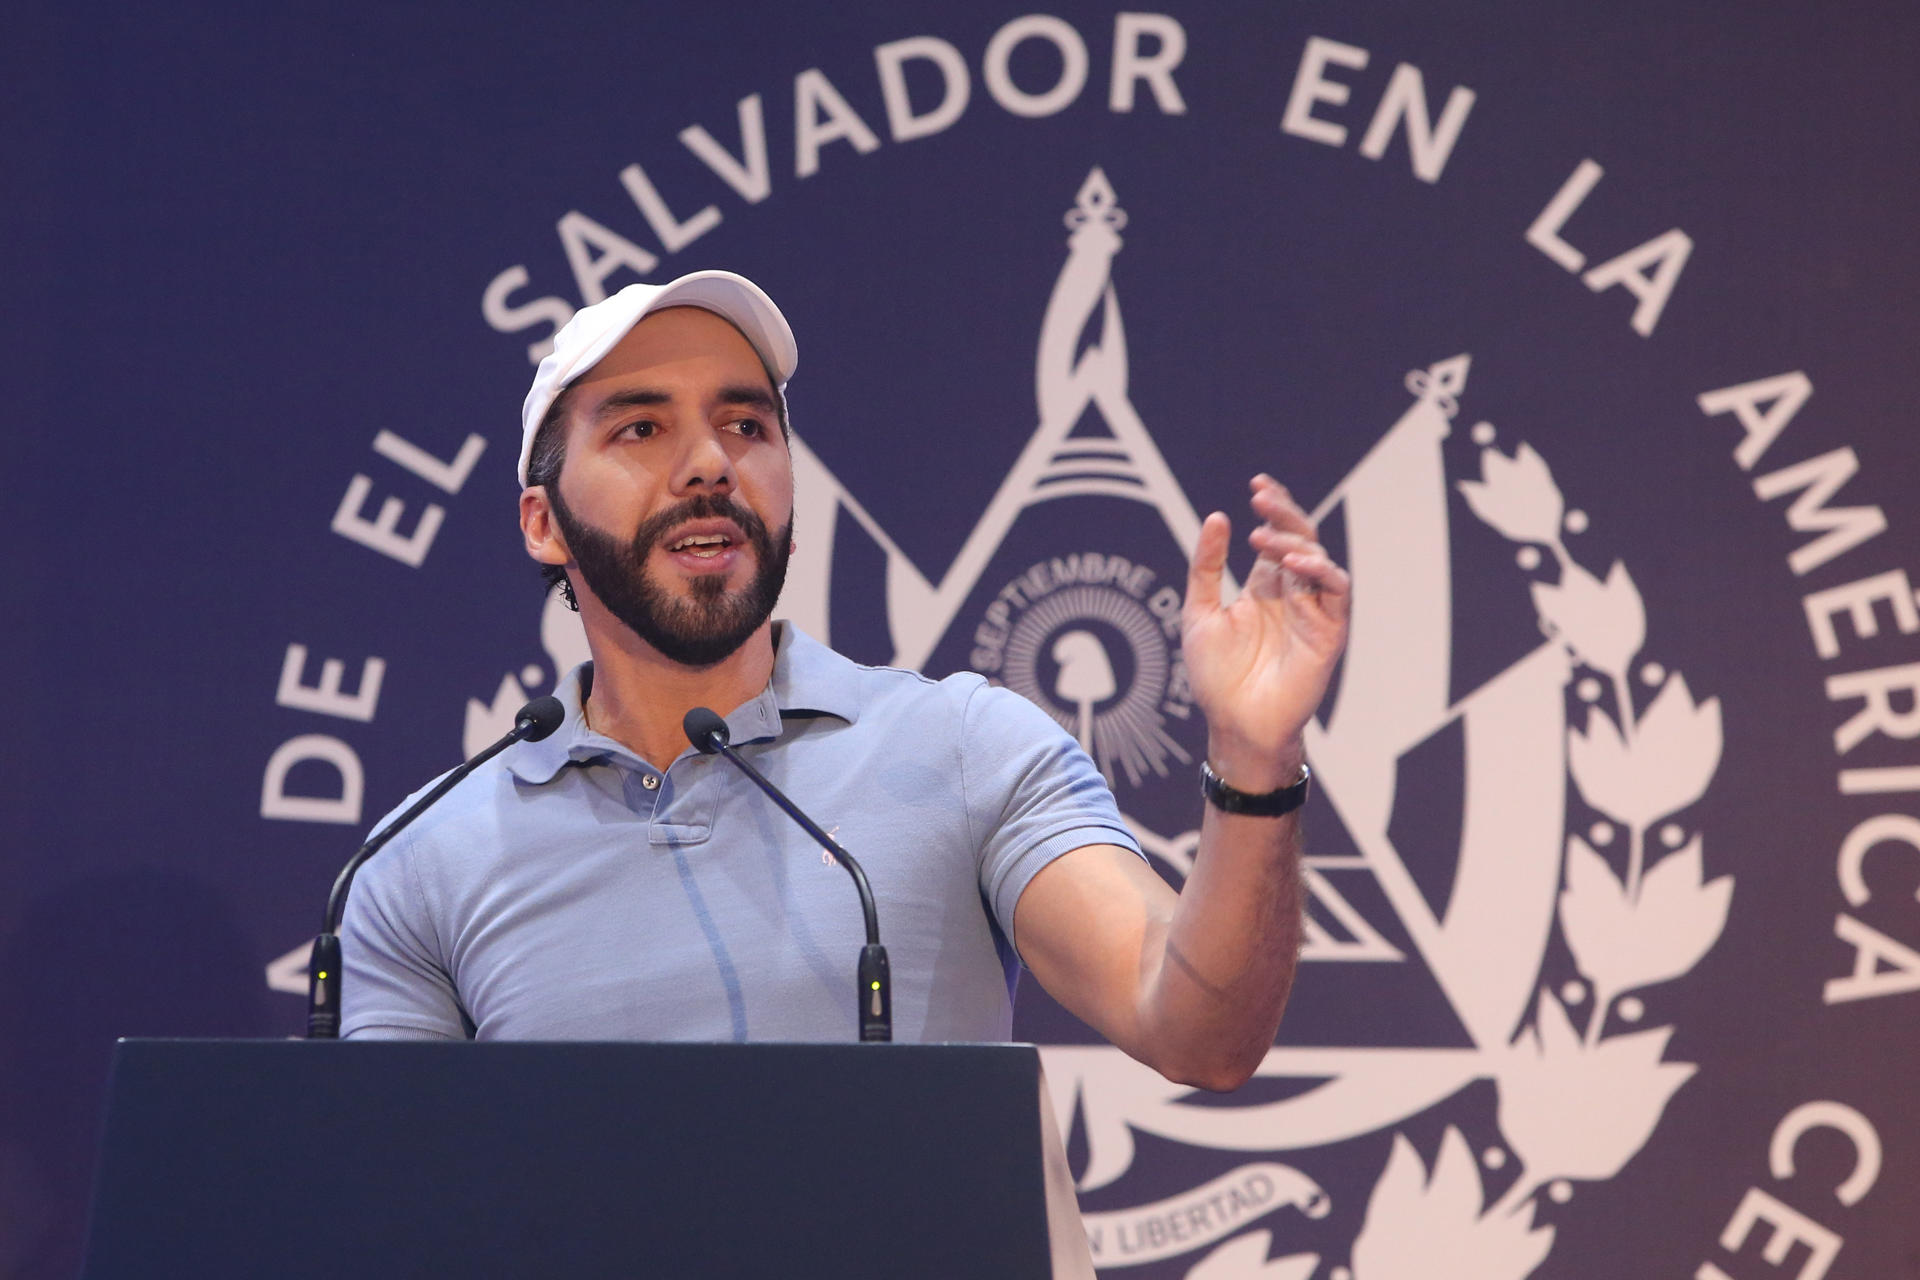 El presidente de El Salvador, Nayib Bukele, fue registrado este domingo, 4 de febrero, durante una conferencia de prensa, en San Salvador (El Salvador). EFE/Javier Aparicio